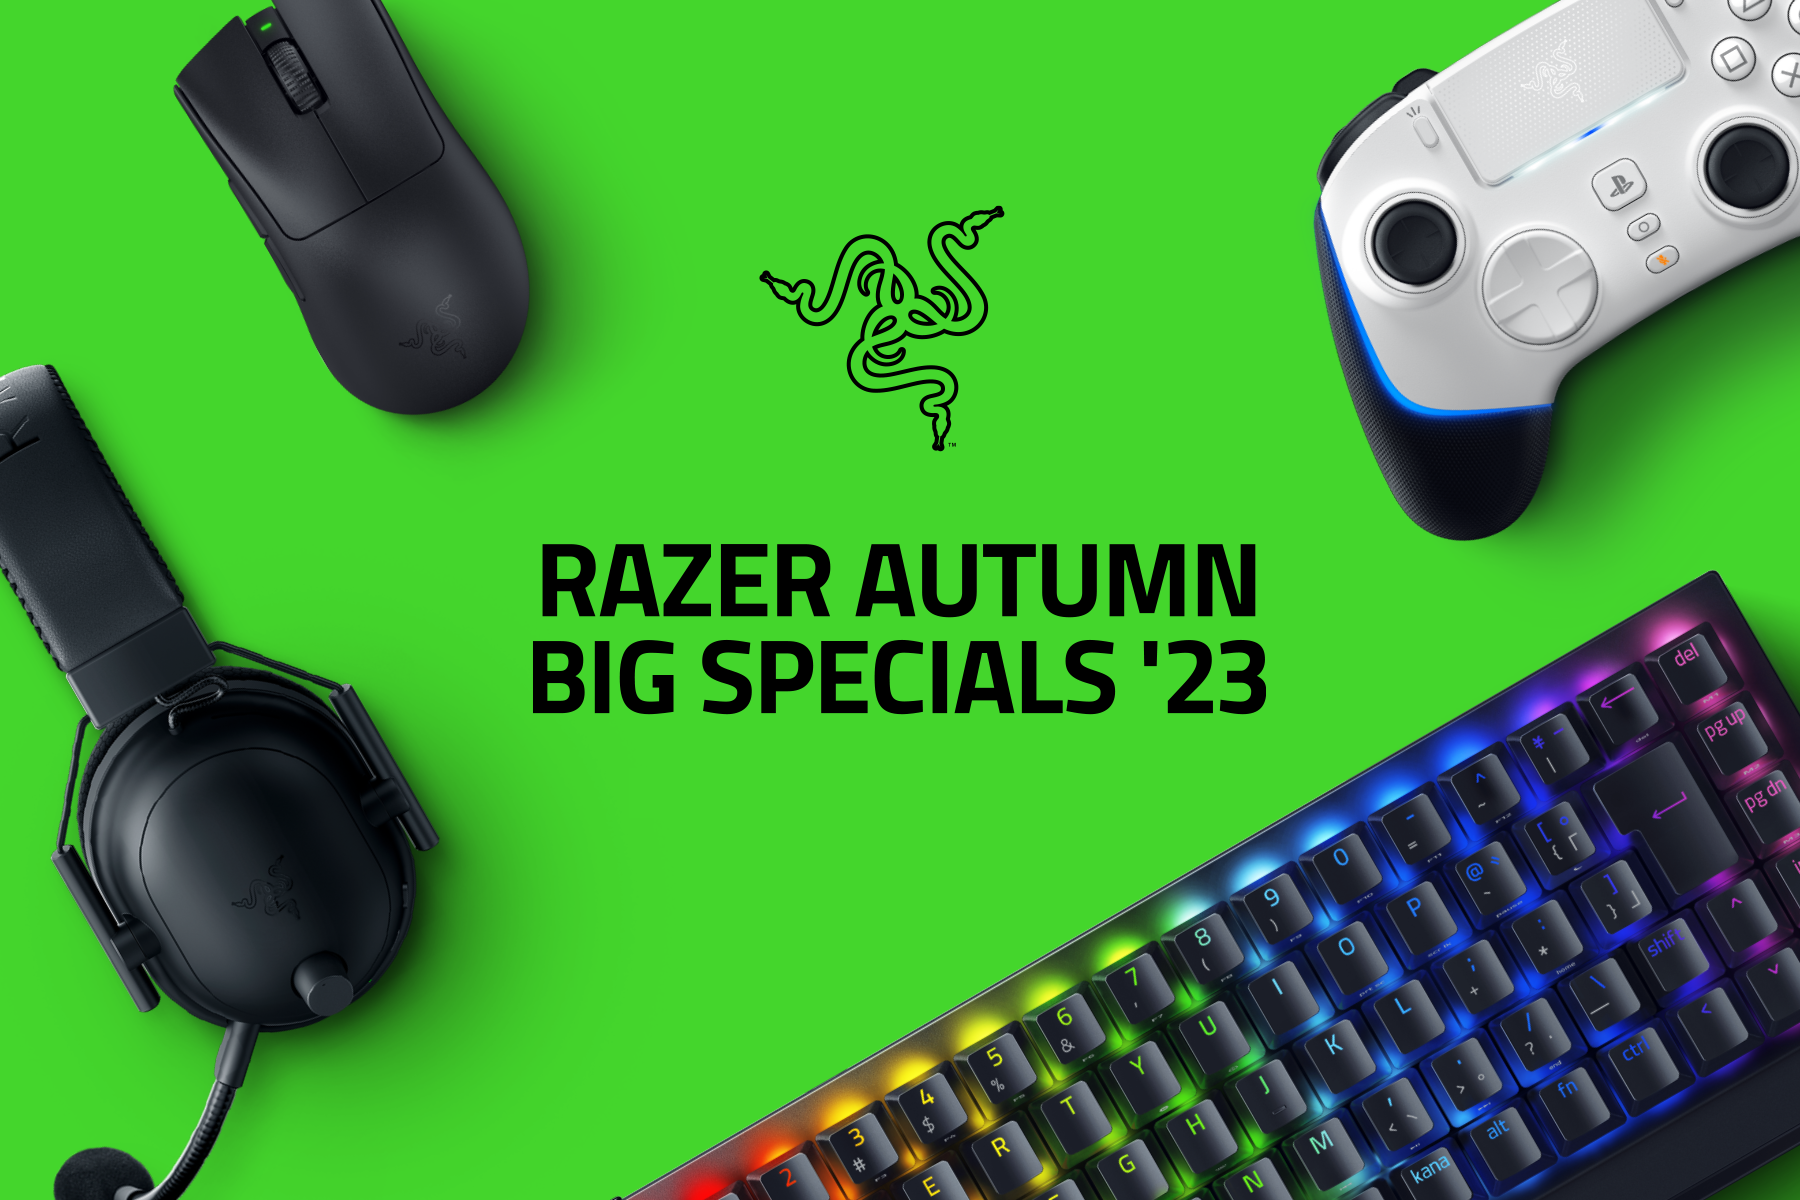 40製品以上が特別価格に！
「Razer Autumn Big Specials ’23」を10月16日(月)より開催